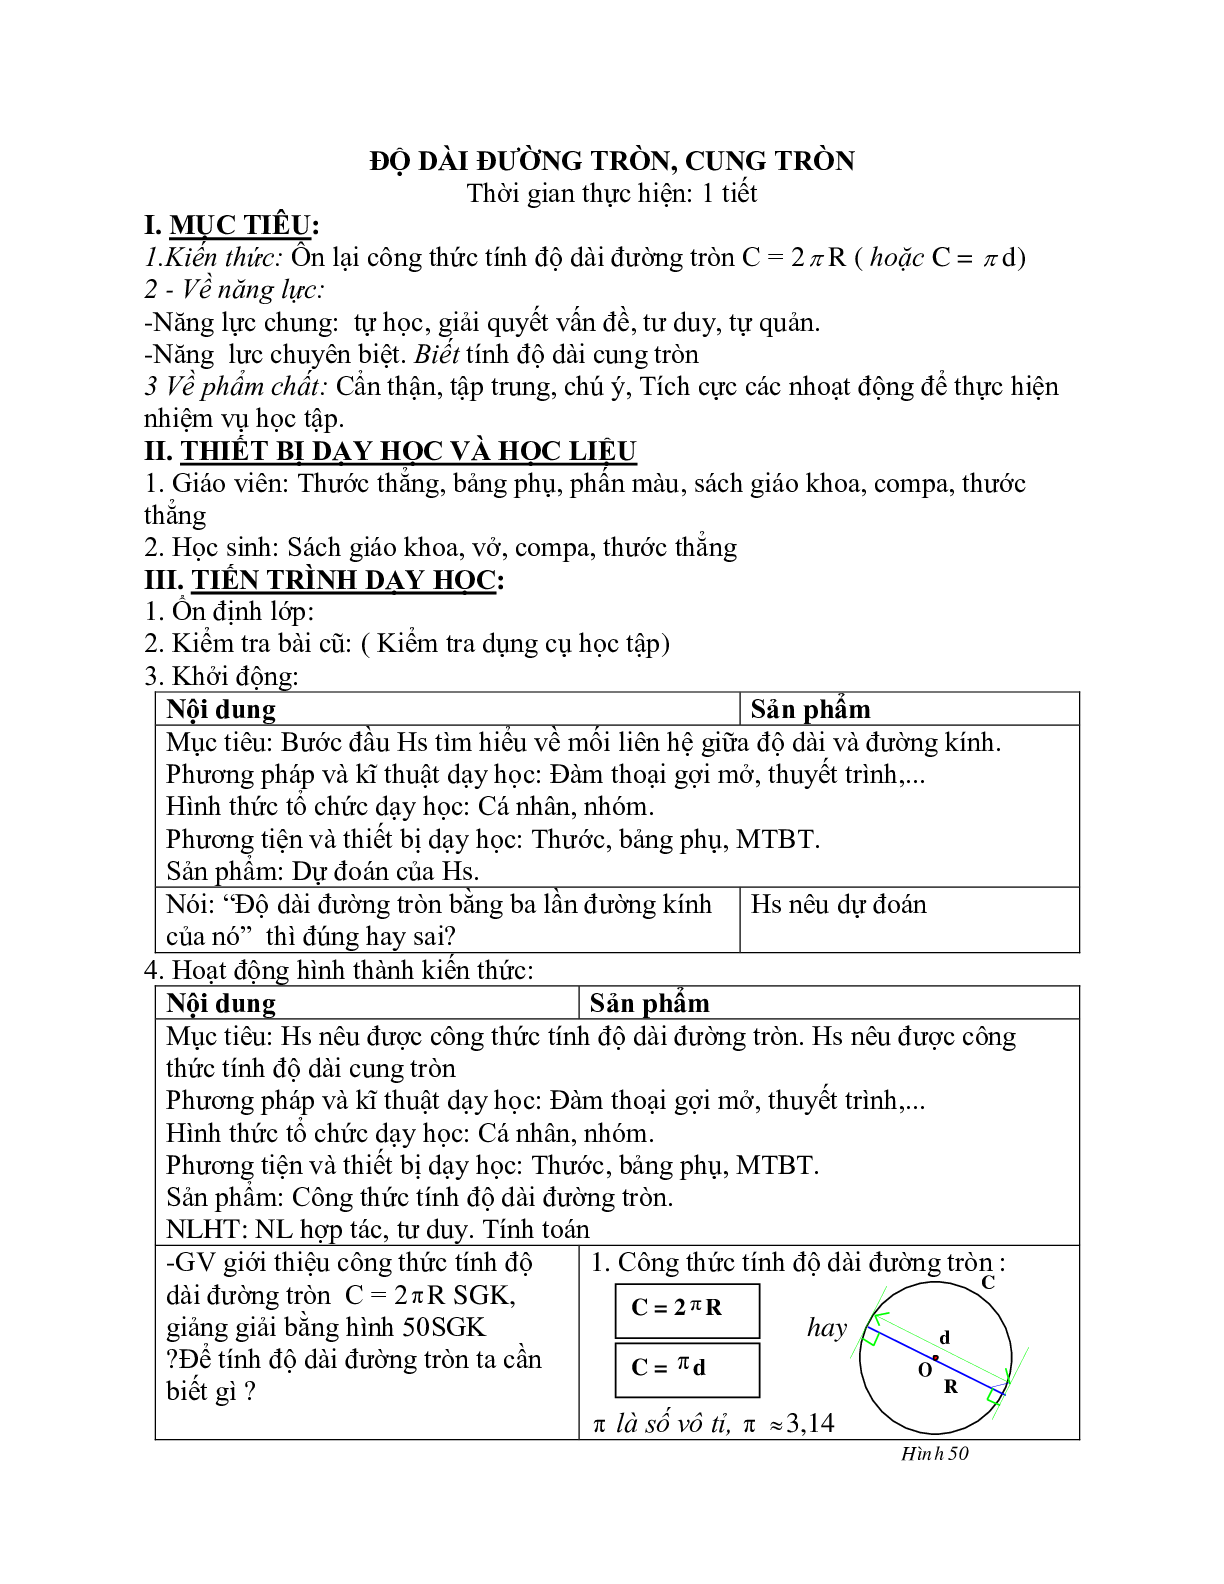 Giáo án Hình học 9 chương 3 bài 9: Độ dài đường tròn, cung tròn mới nhất (trang 1)